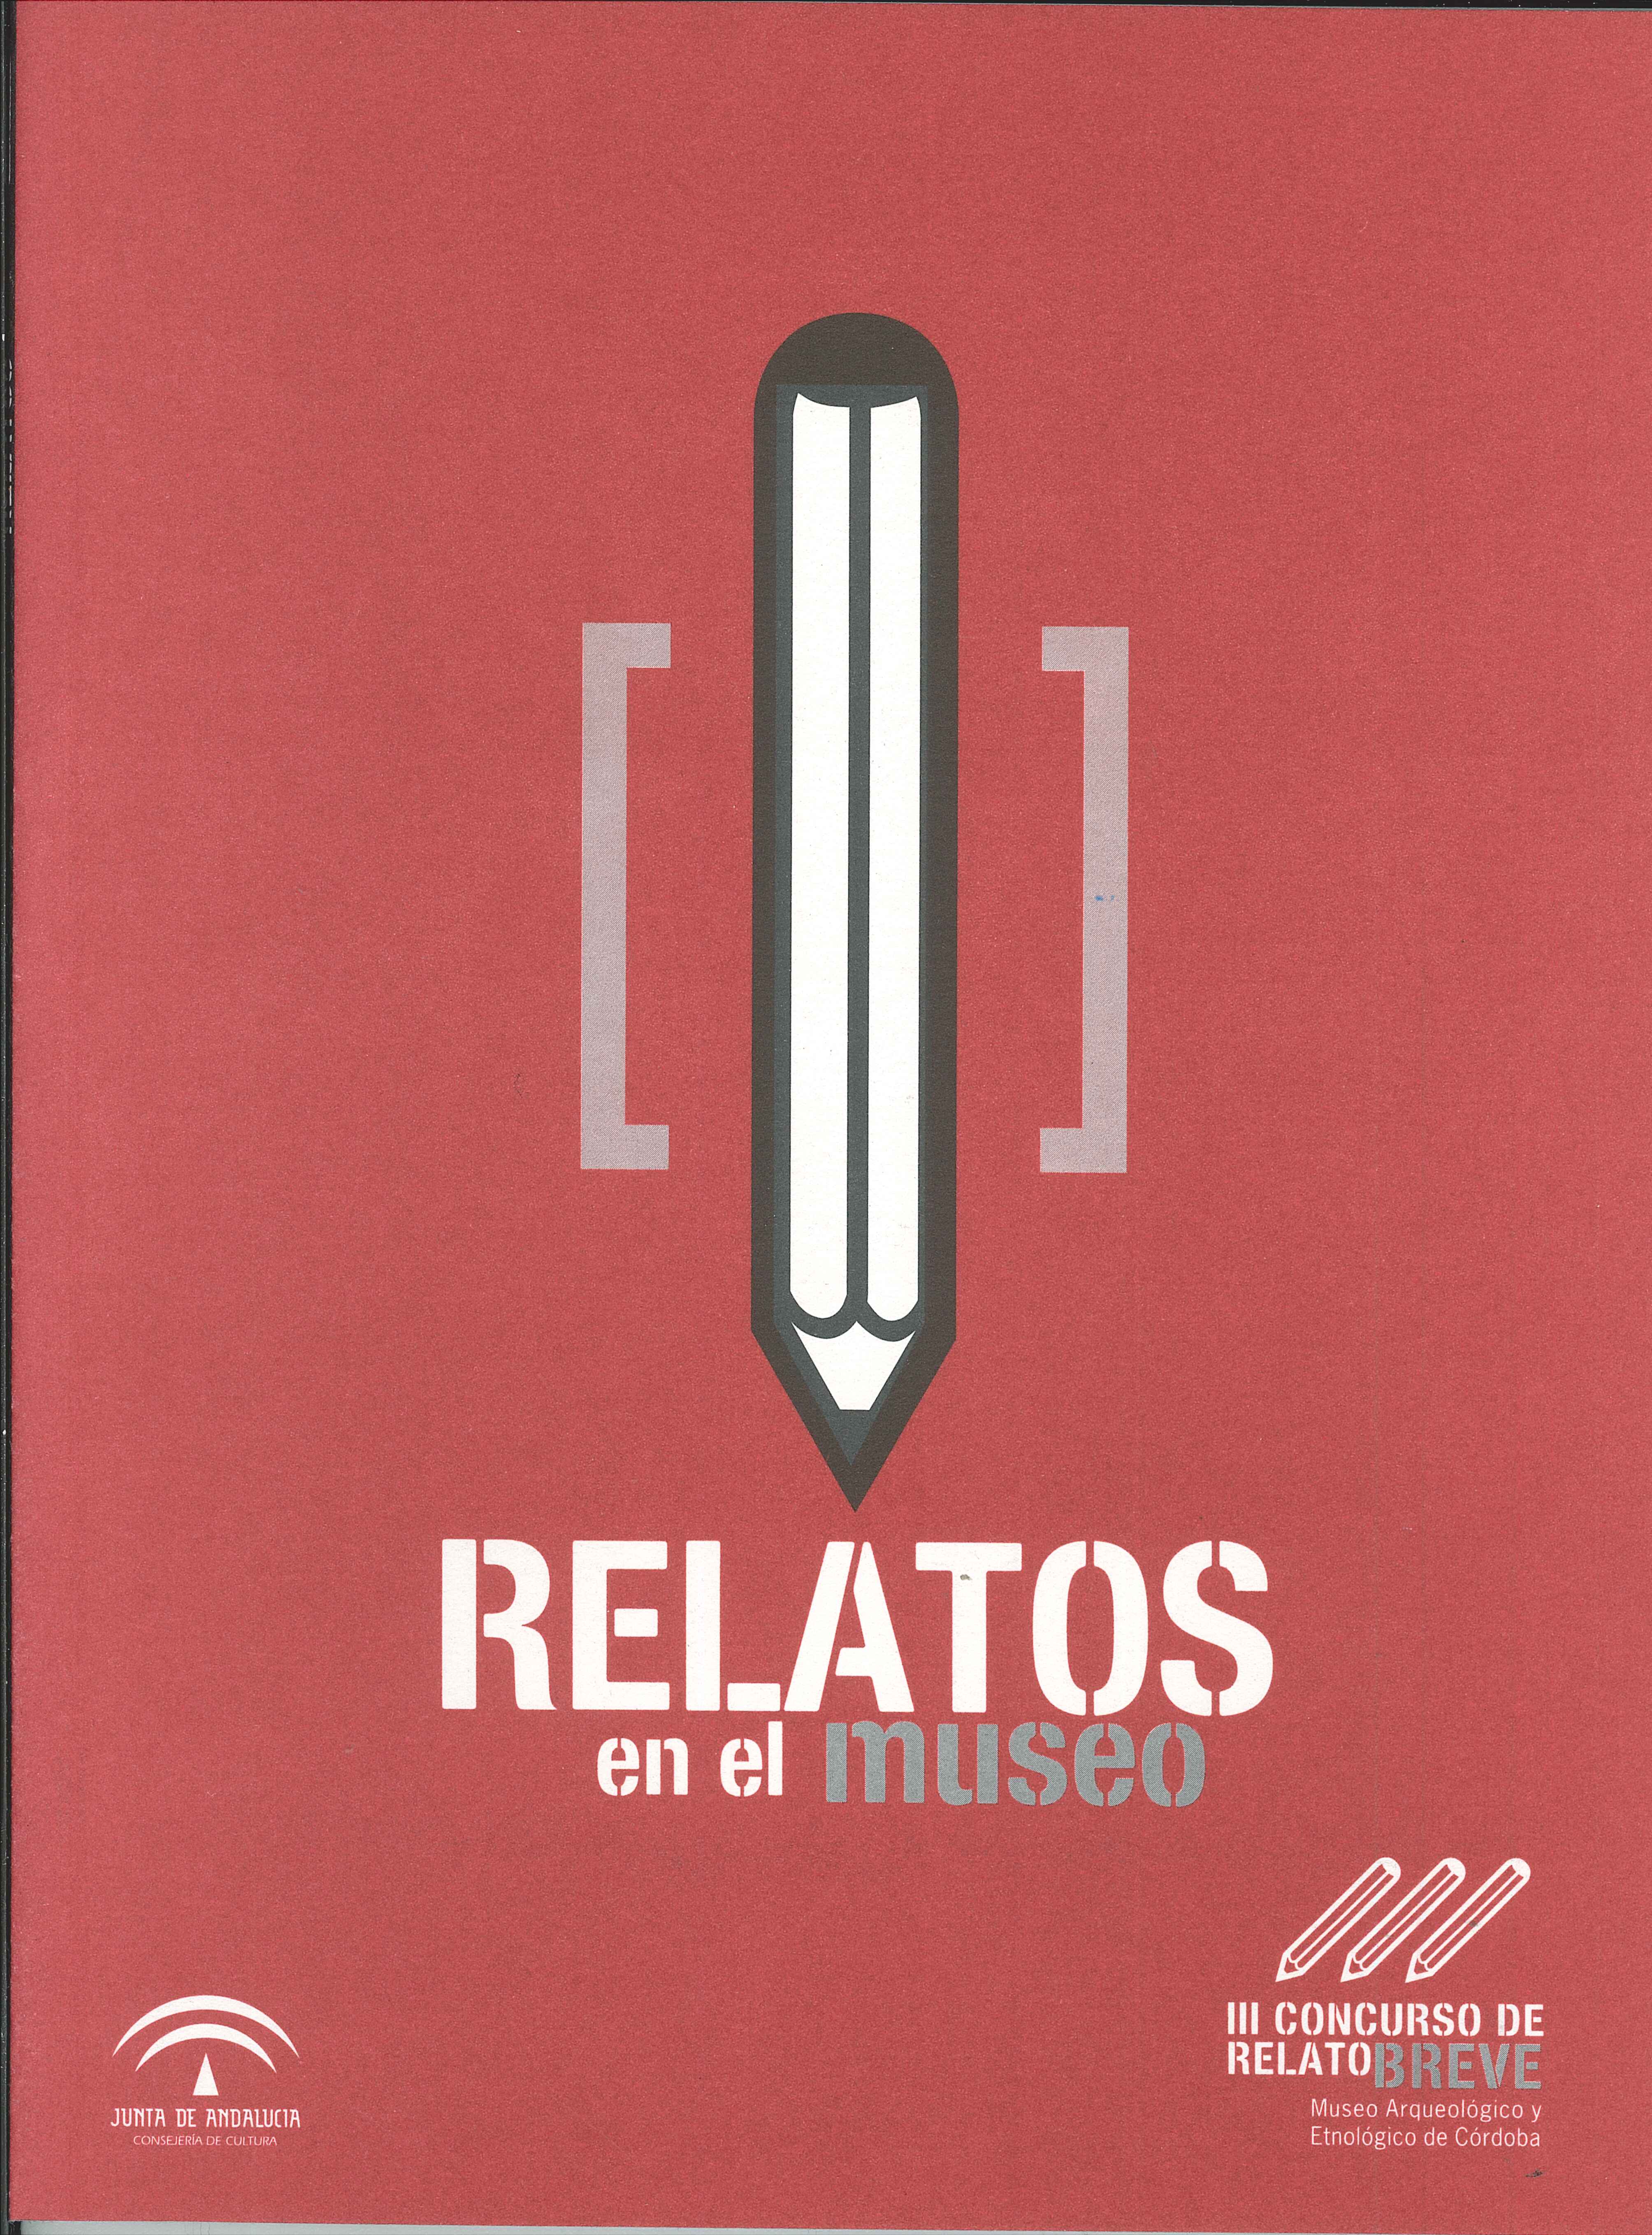 Relatos en el Museo. III Concurso de Relato de Breve del Museo Arqueológico y Etnológico de Córdoba